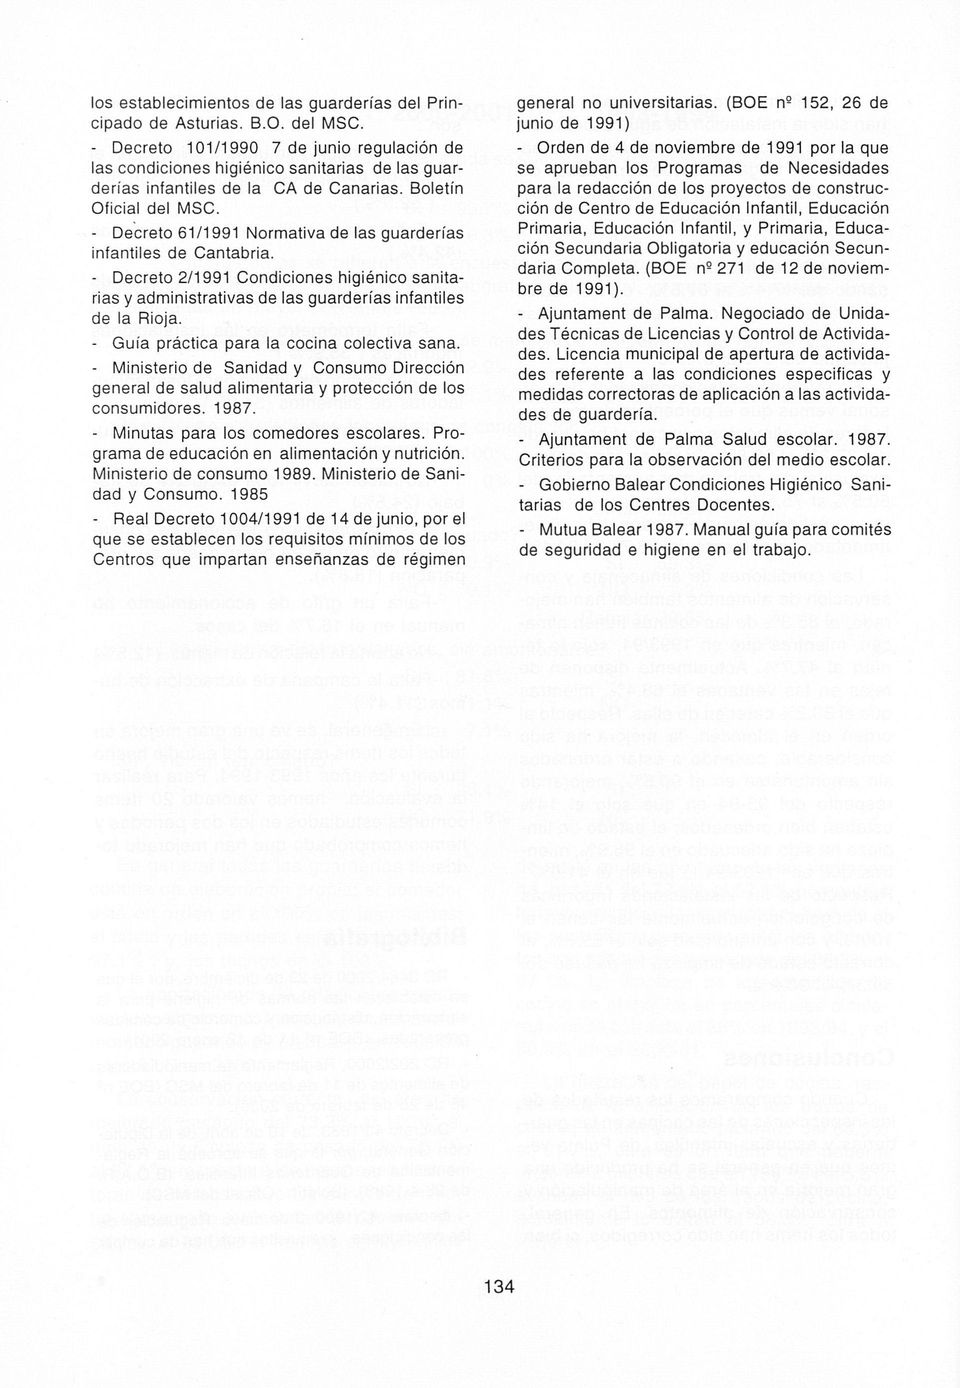 - Decreto 61/1991 Normativa de las guarderías infantiles de Cantabria. - Decreto 2/1991 Condiciones higiénico sanitarias y administrativas de las guarderías infantiles de la Rloja.